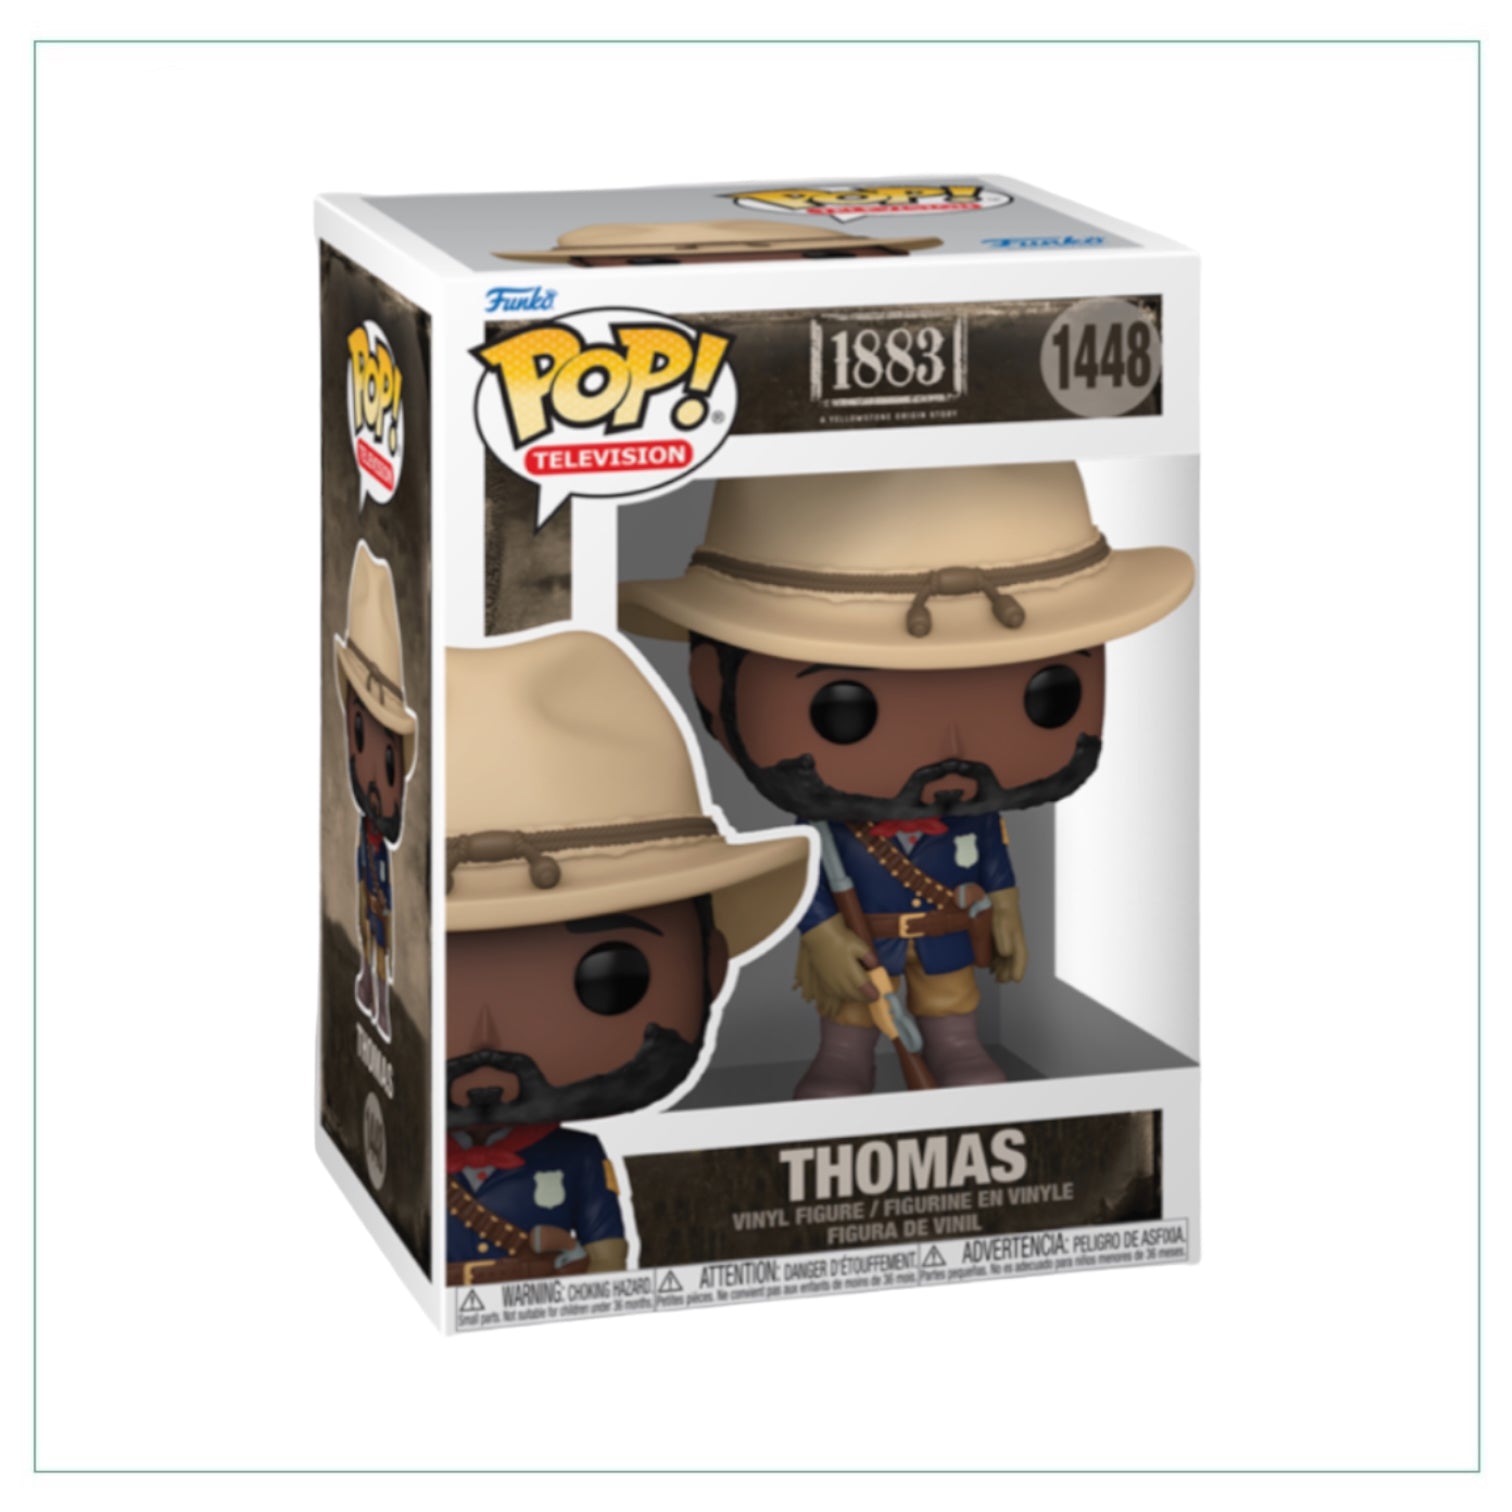 Thomas #1448 Funko Pop! Yellowstone 1883